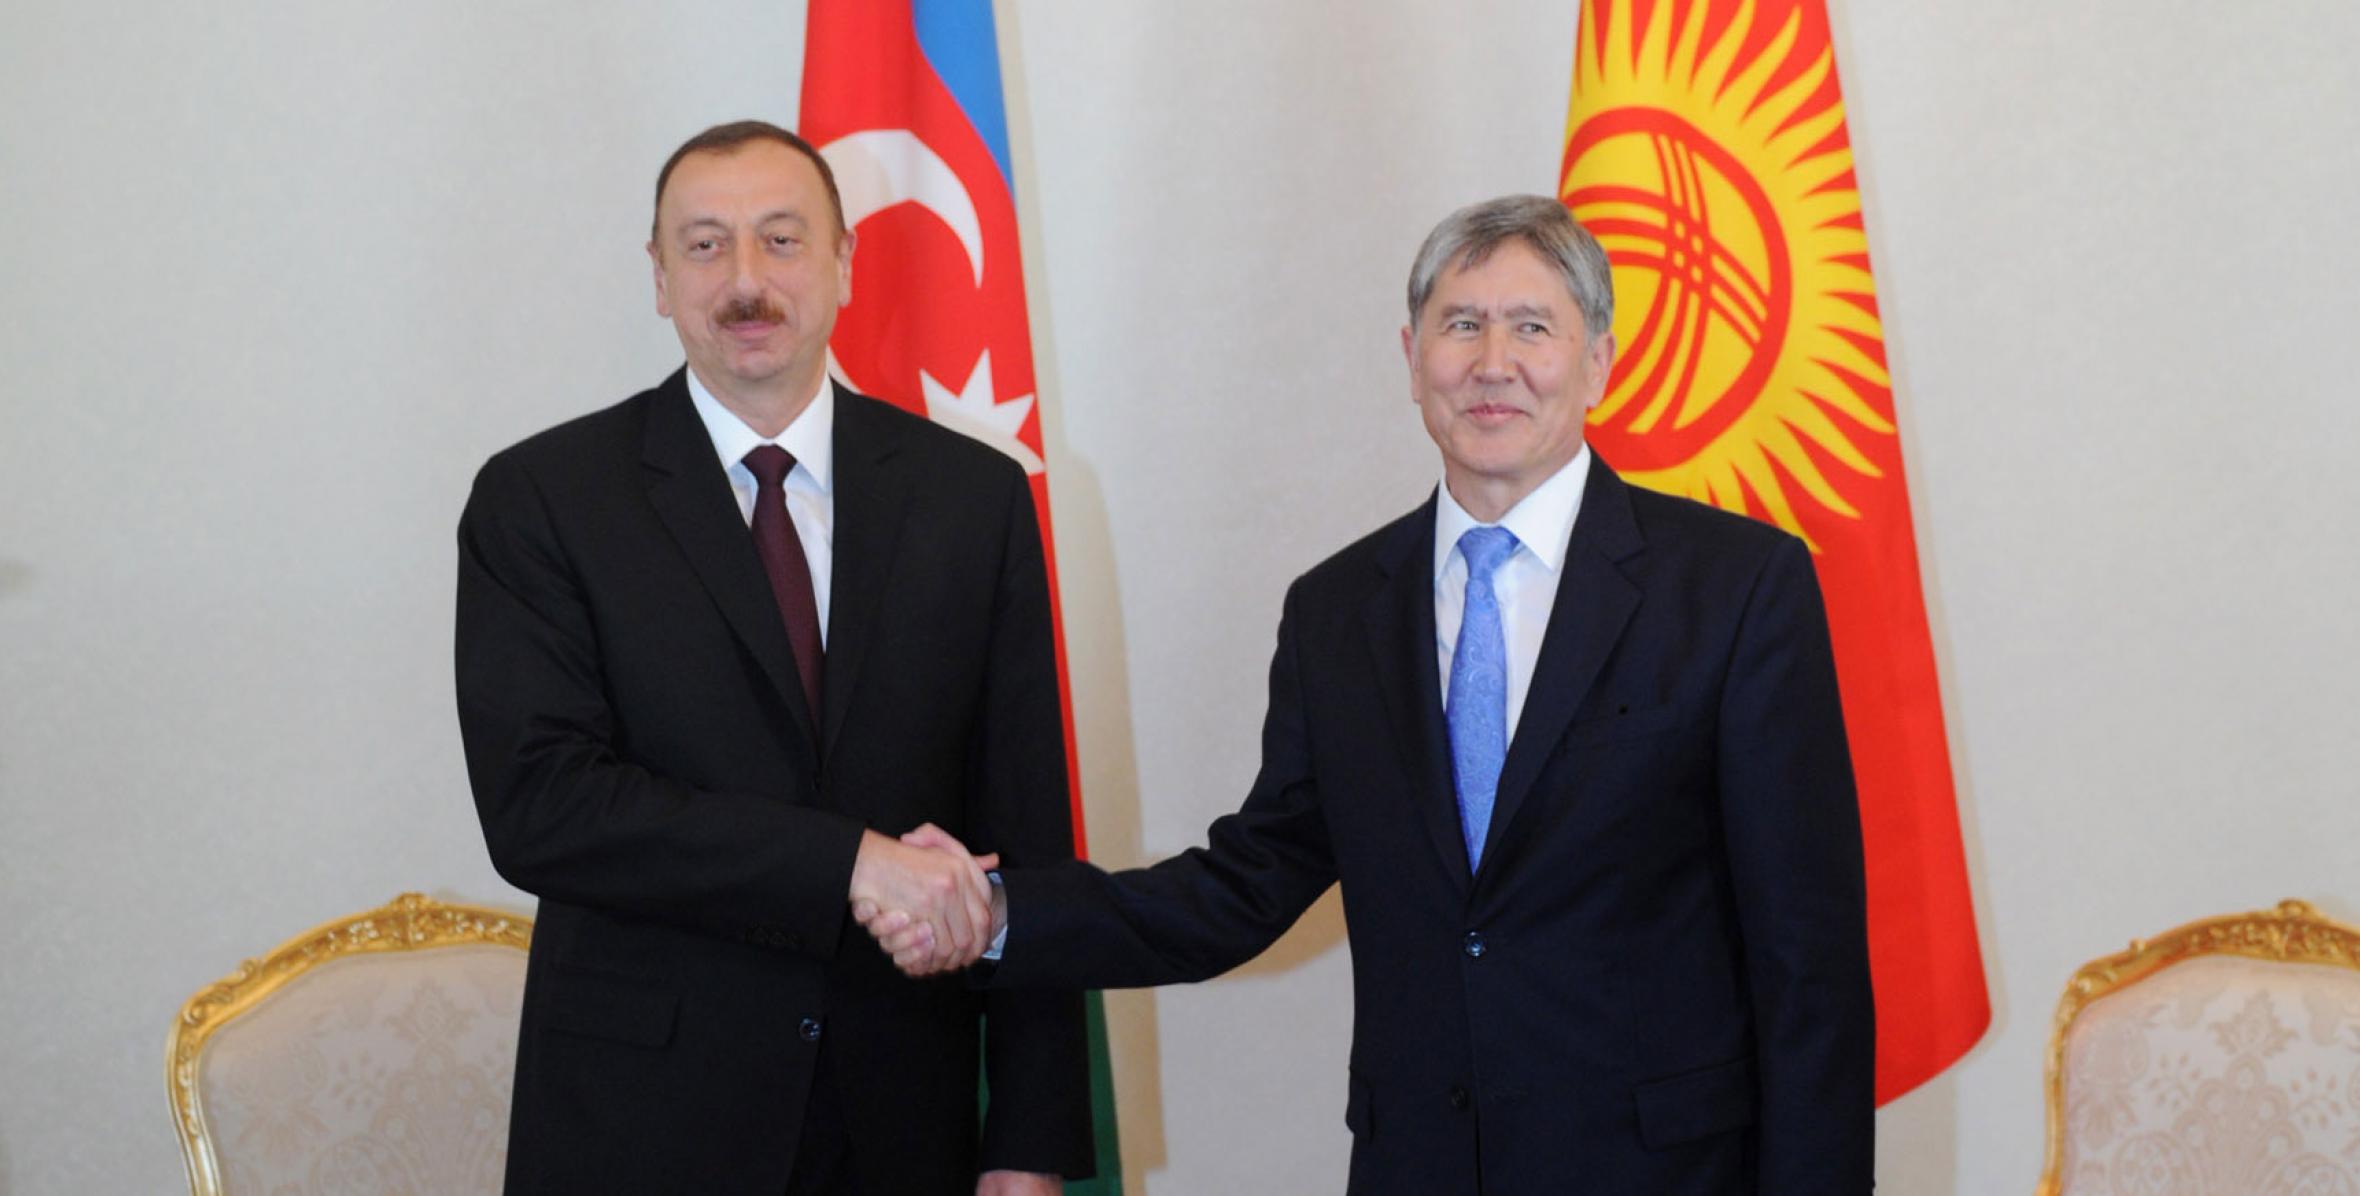 İlham Əliyevin və Qırğızıstan Prezidenti Almazbek Atambayevin görüşü olmuşdur